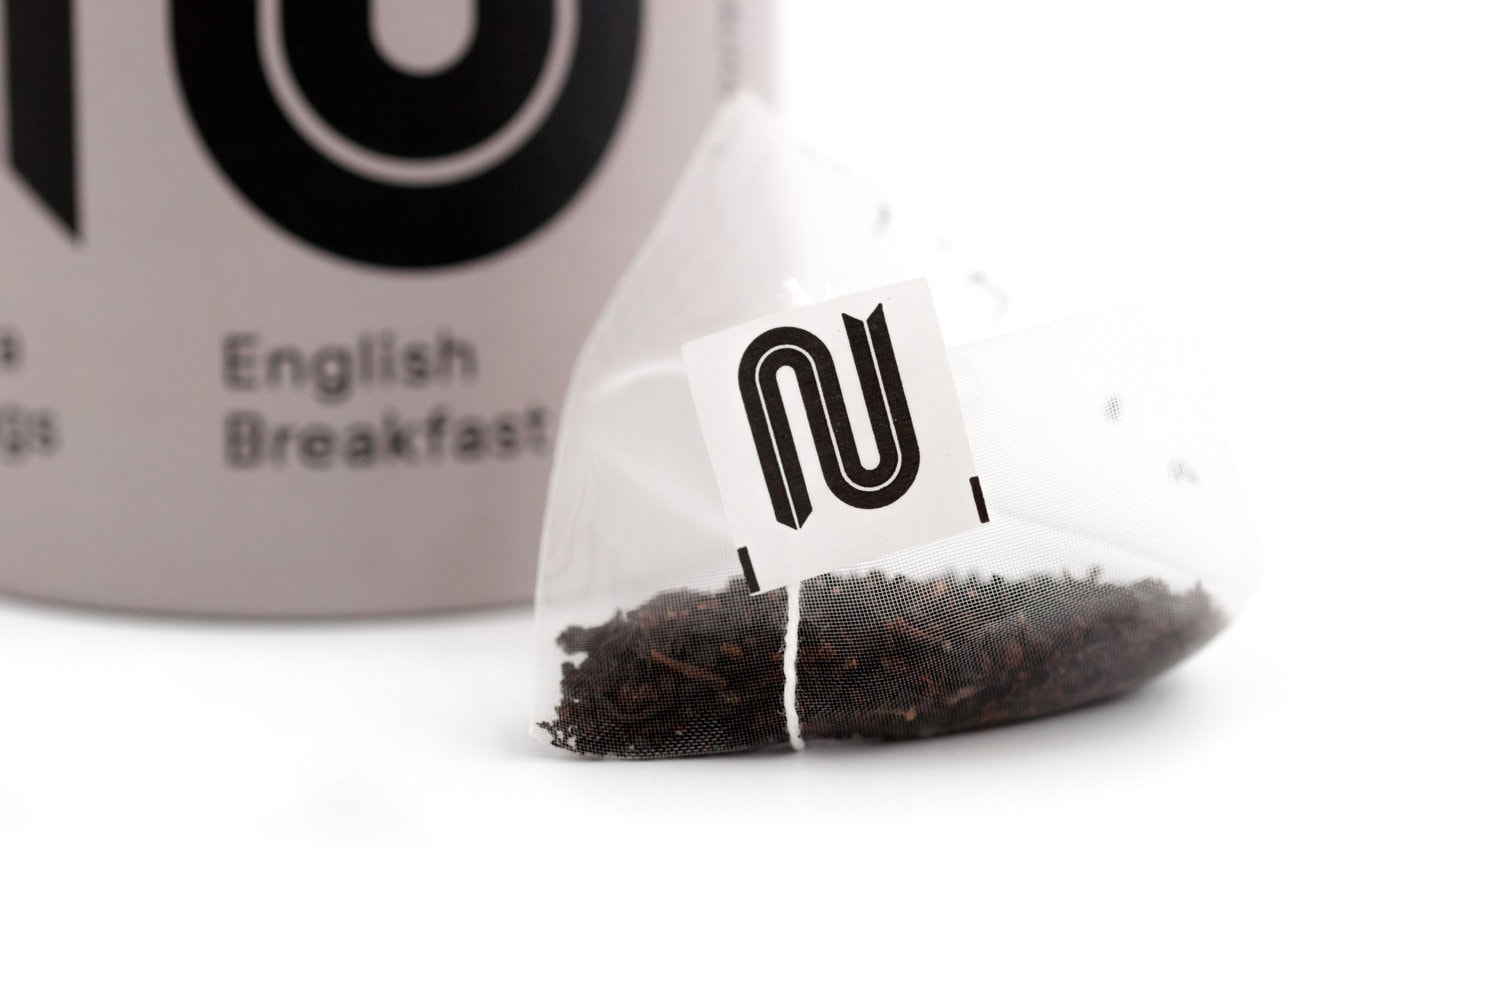 English Breakfast Tea - 15 Teabags Tube